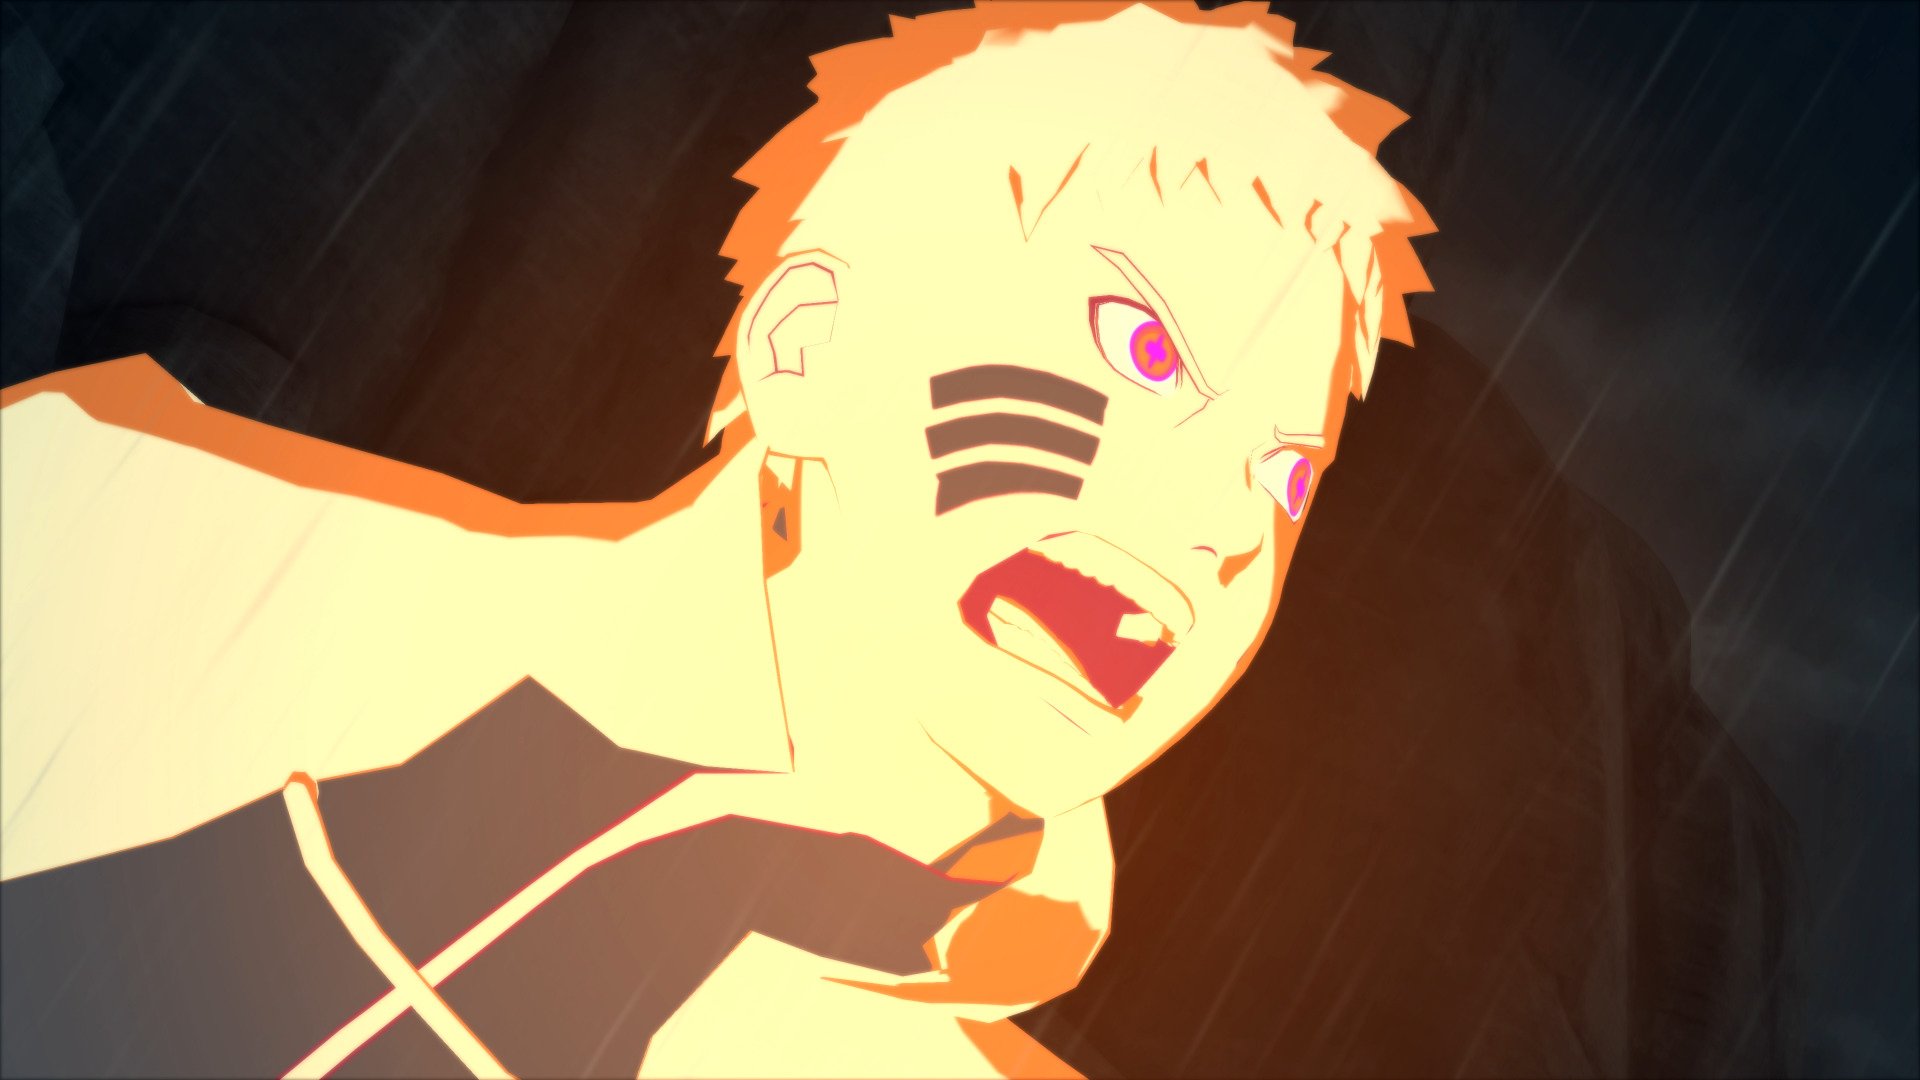 Naruto x Boruto: Vídeo mostra forma inédita de Naruto nos jogos